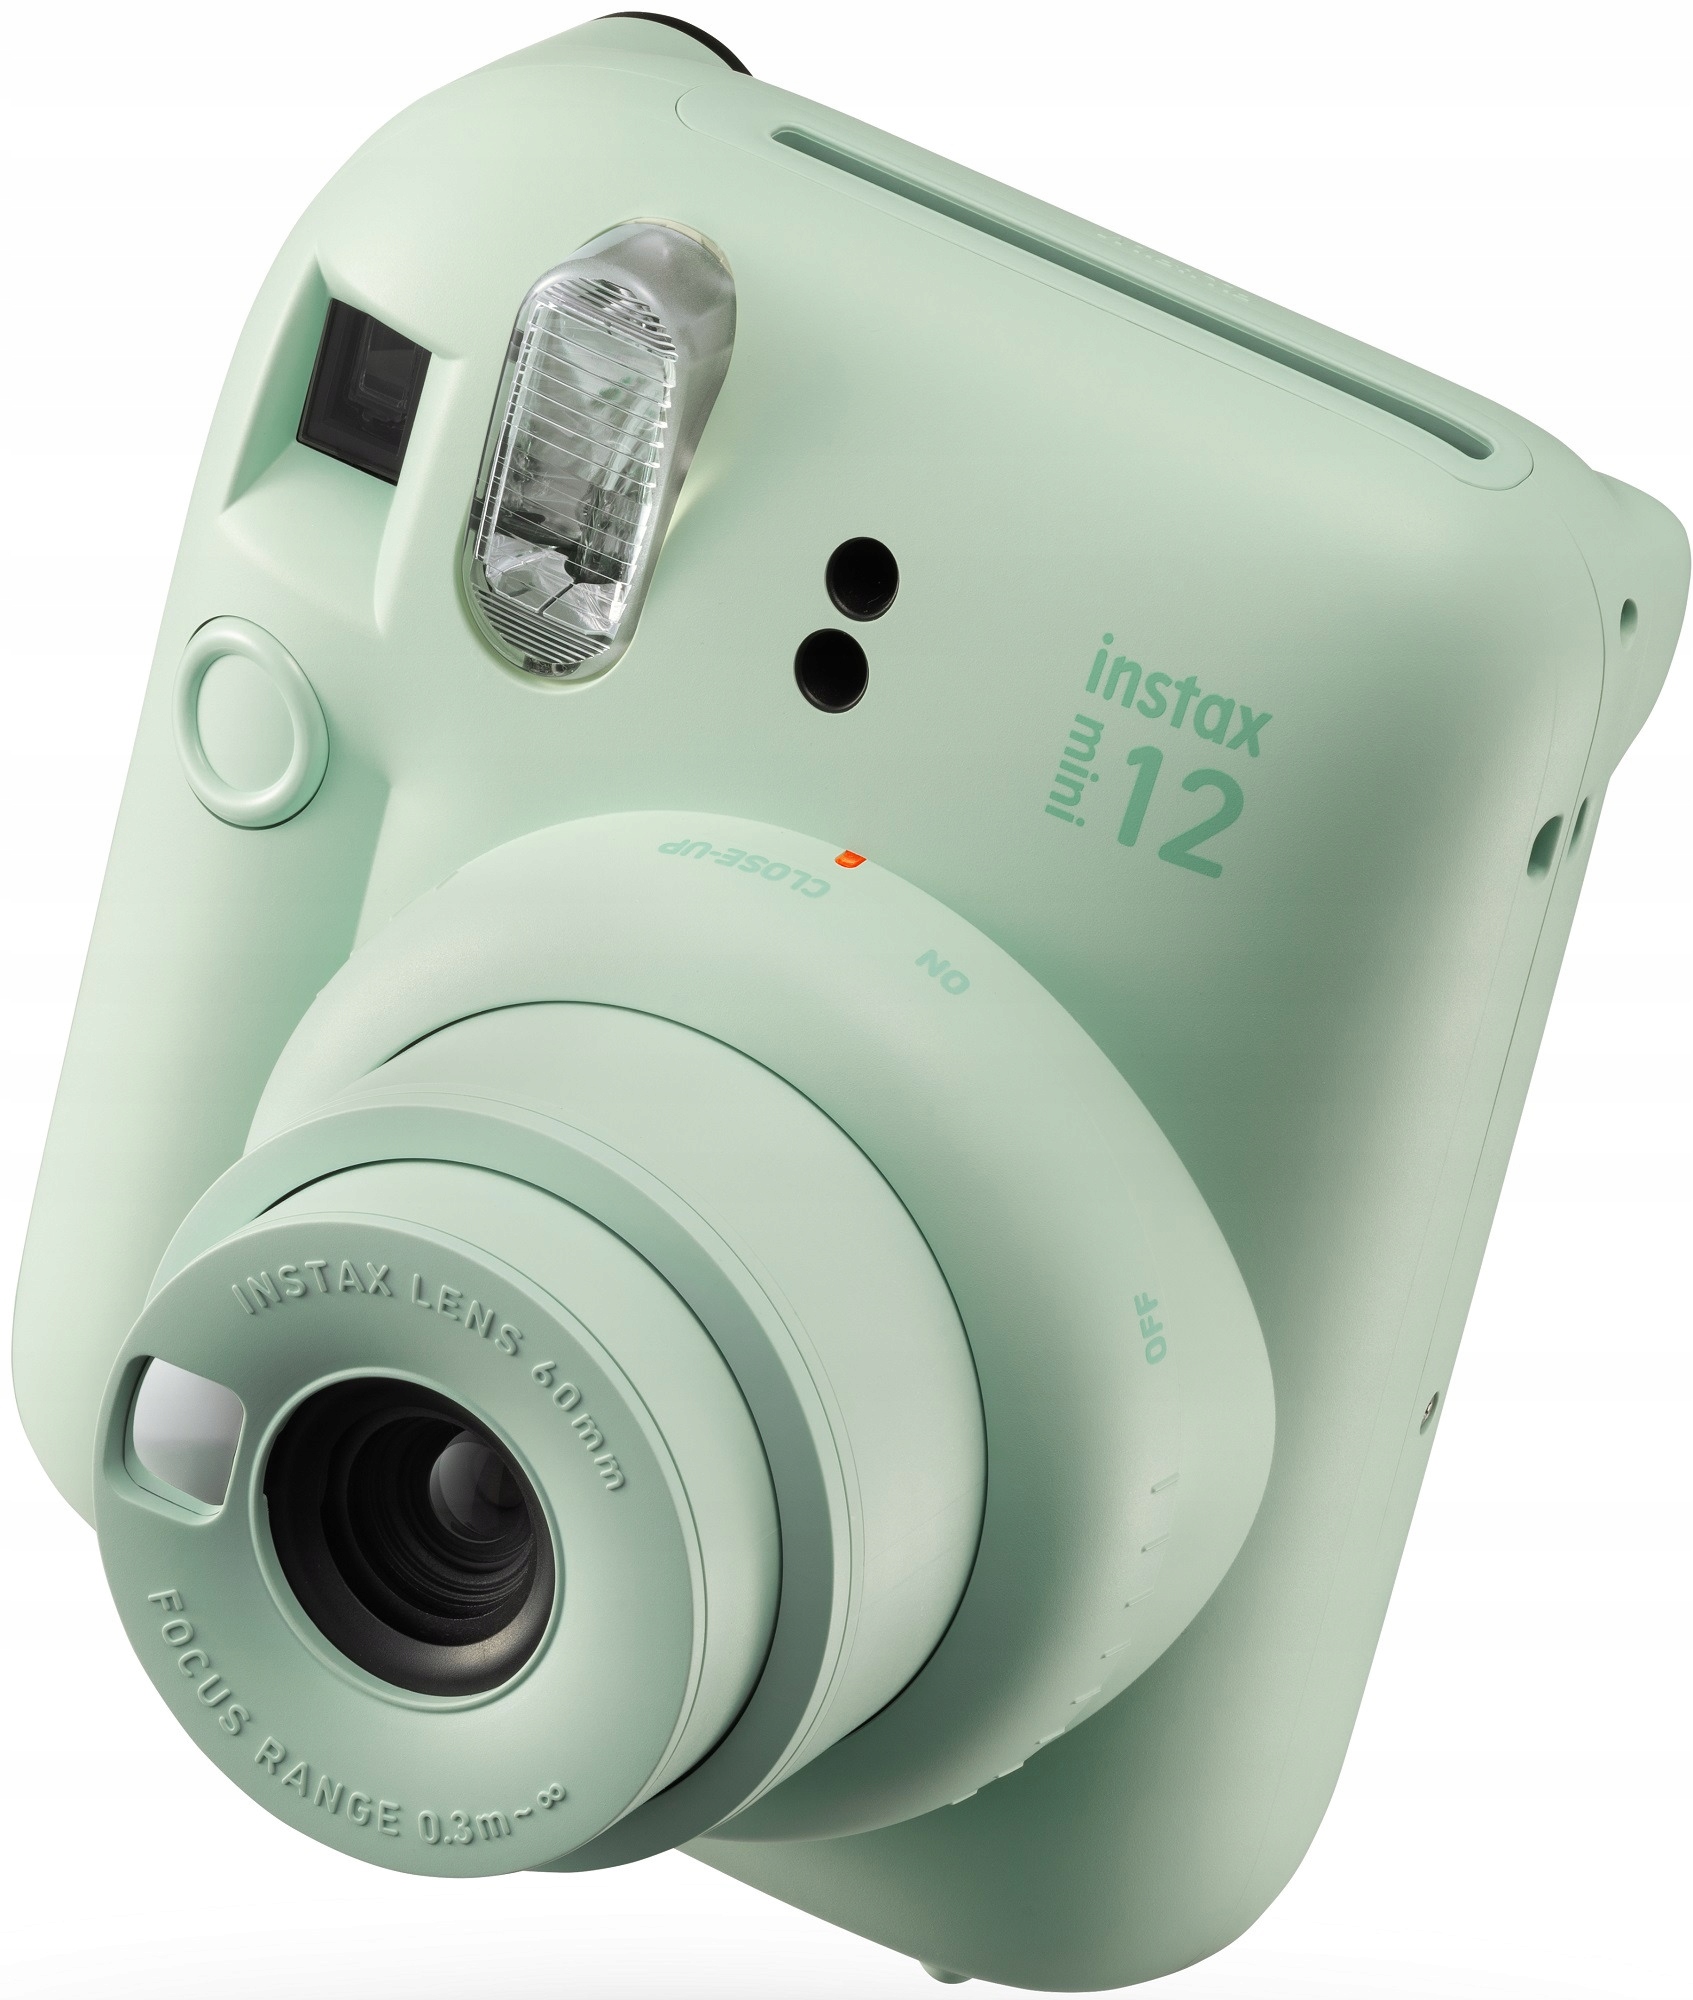 Aparat Fujifilm Instax Mini 12 zielony Kolor zielony